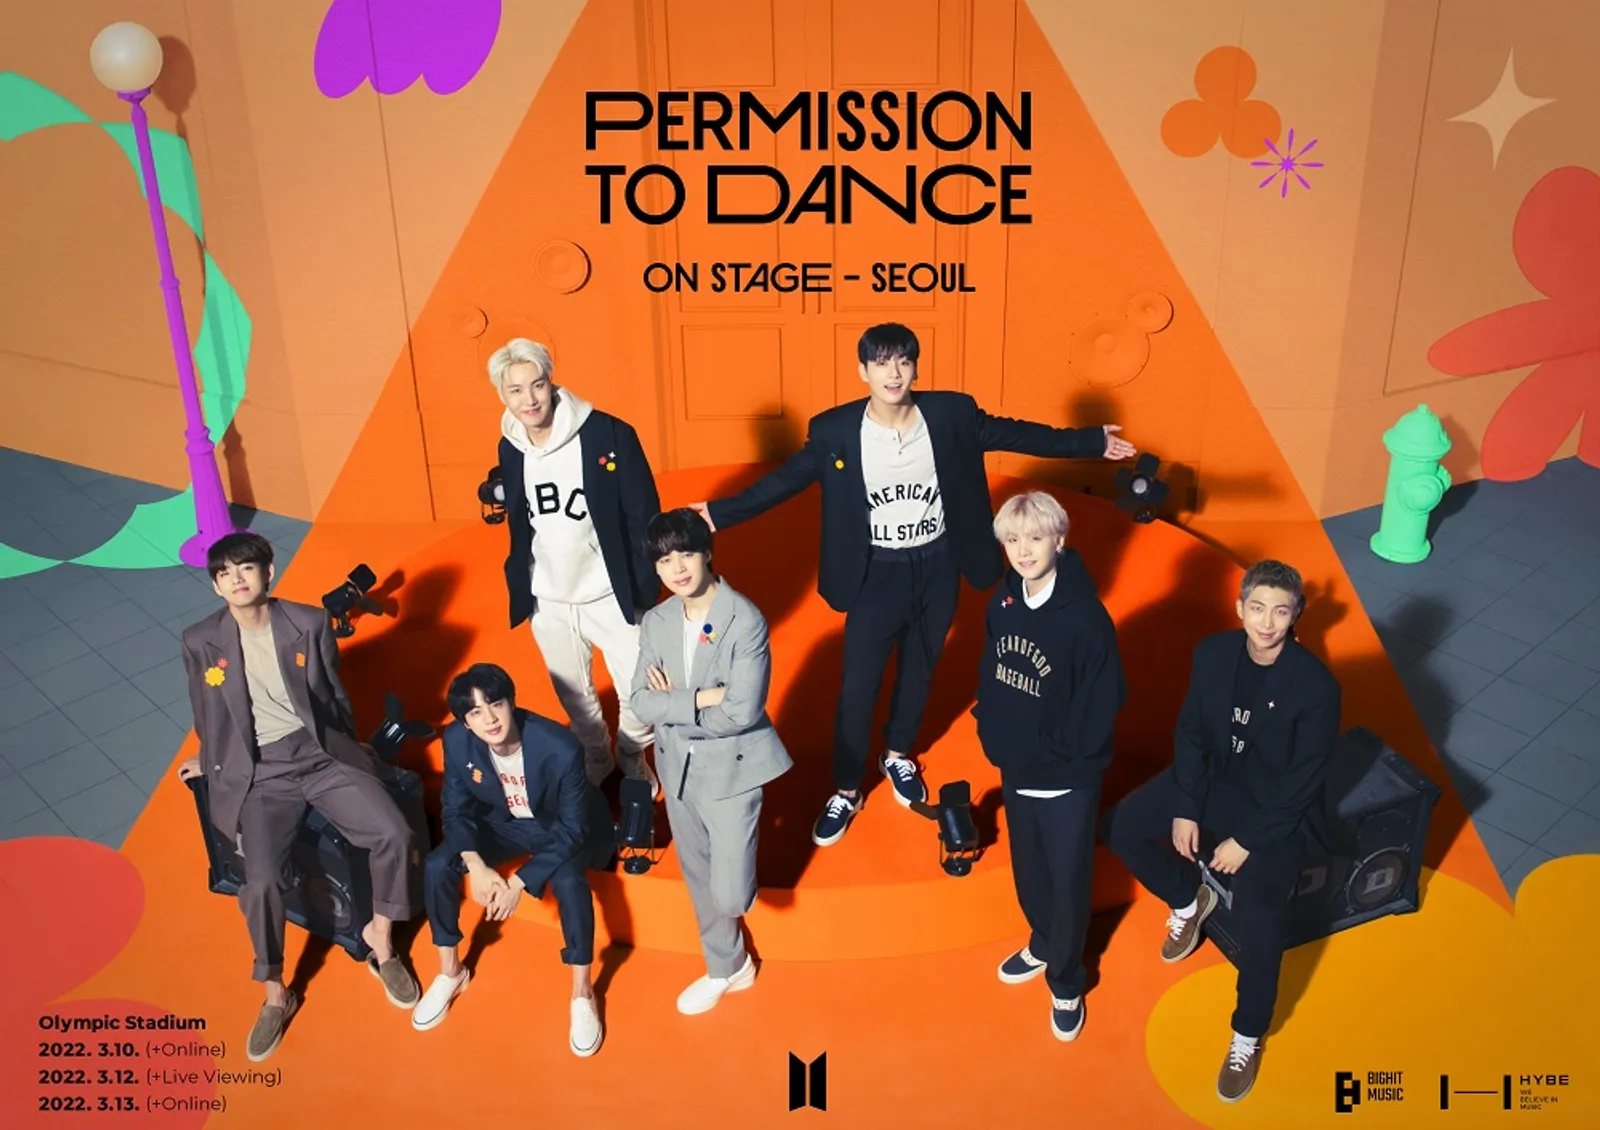 BTS Umumkan Konser “Permission To Dance” di Las Vegas